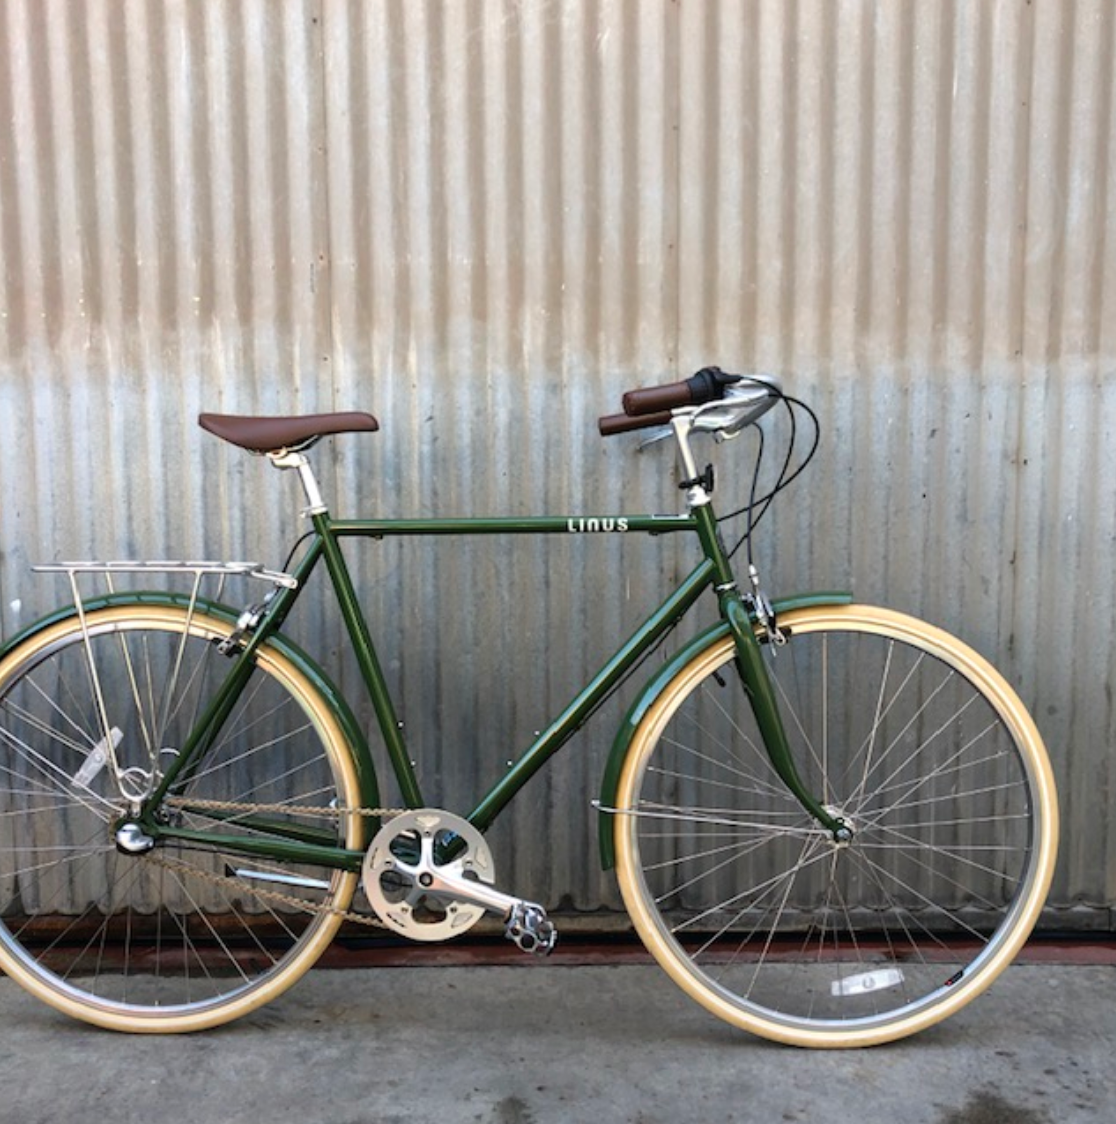 Gentlemen's Linus City Bike - Olive Roadster Sport - Studio Rental